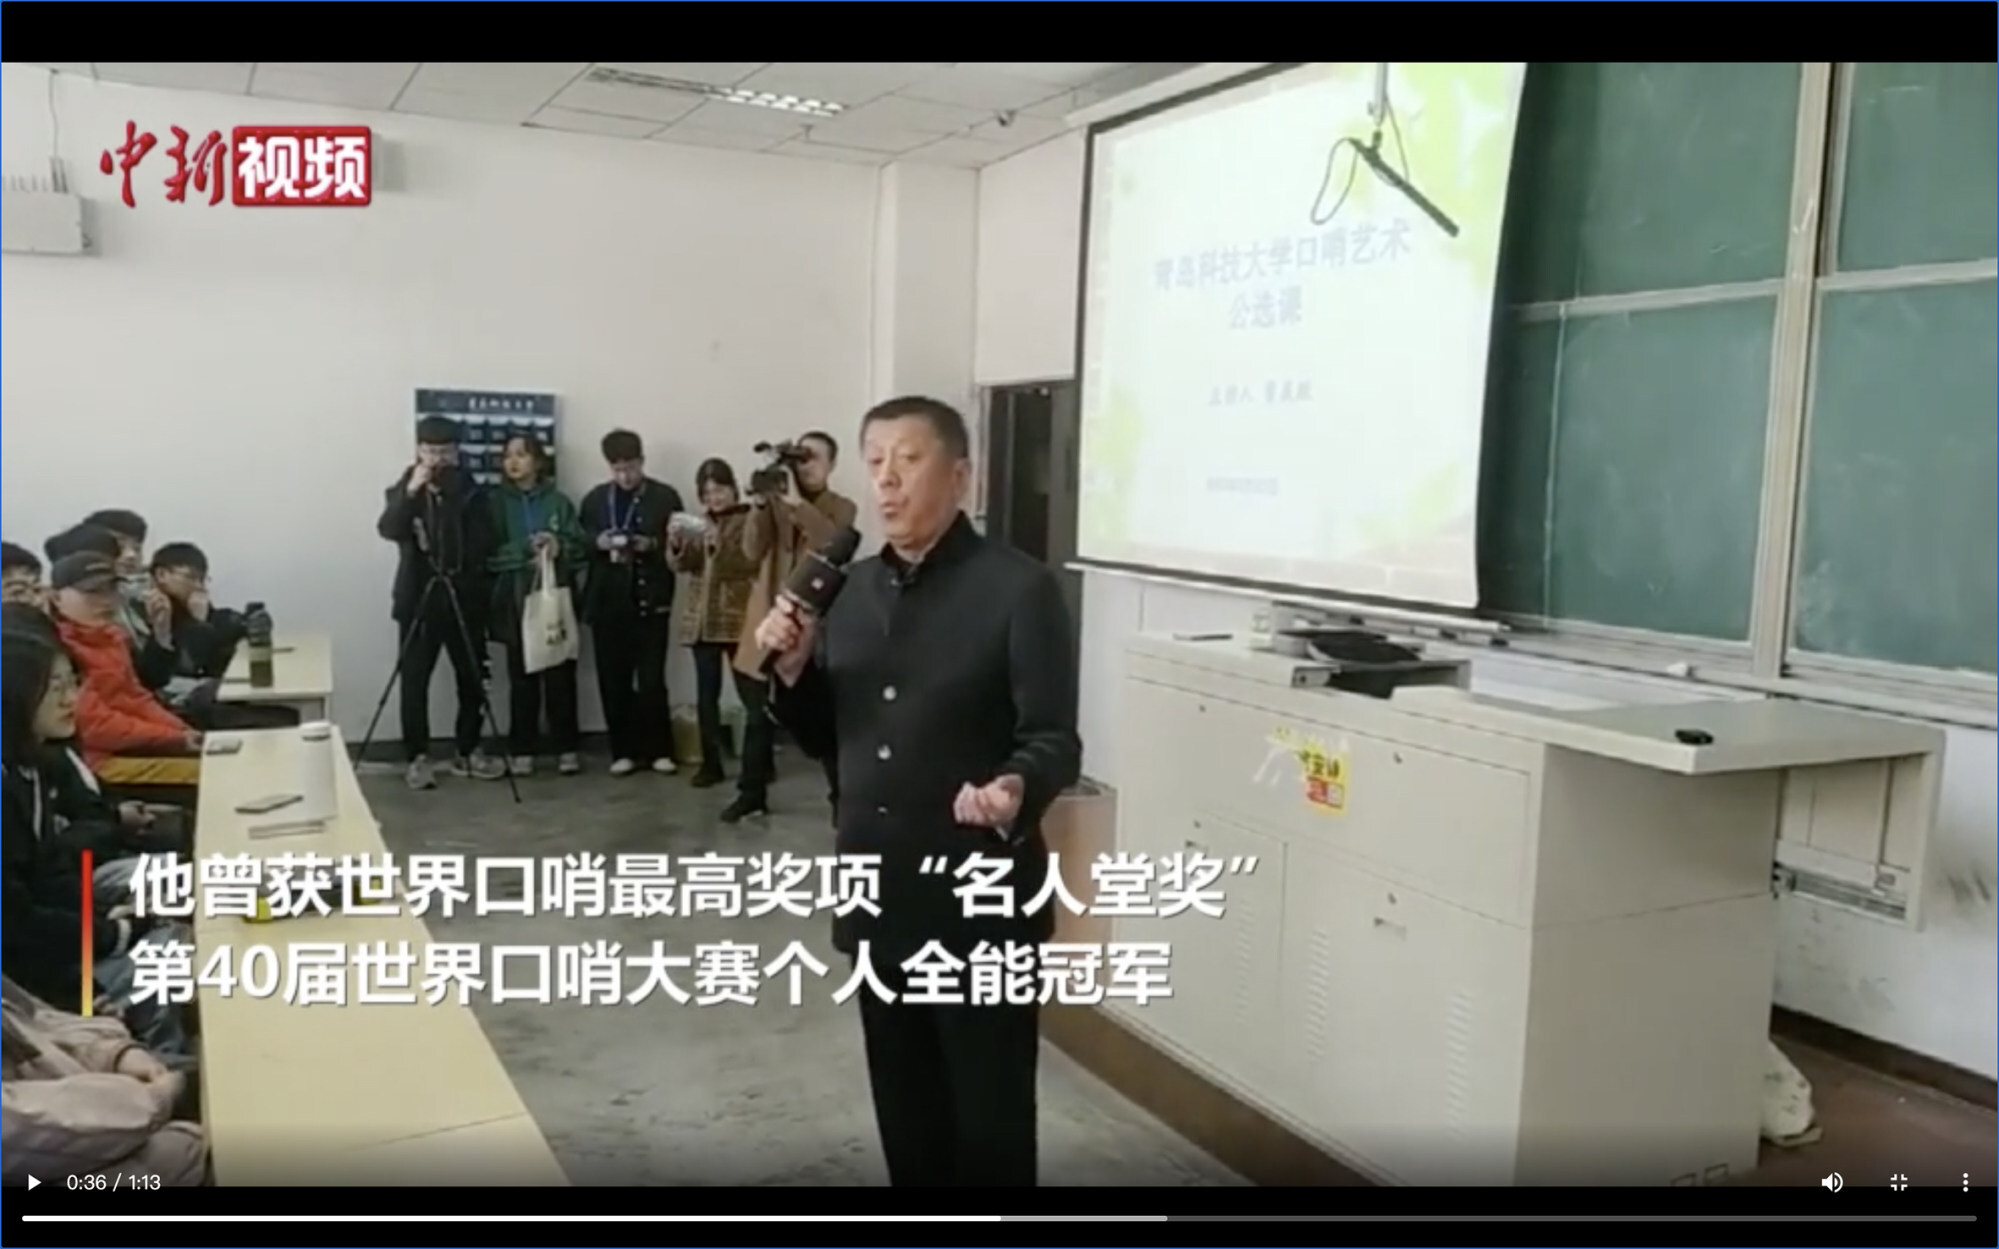 Video seorang guru yang mendemonstrasikan peluitnya yang memenangkan penghargaan kepada para siswanya menjadi viral di Tiongkok. Foto: Selebaran